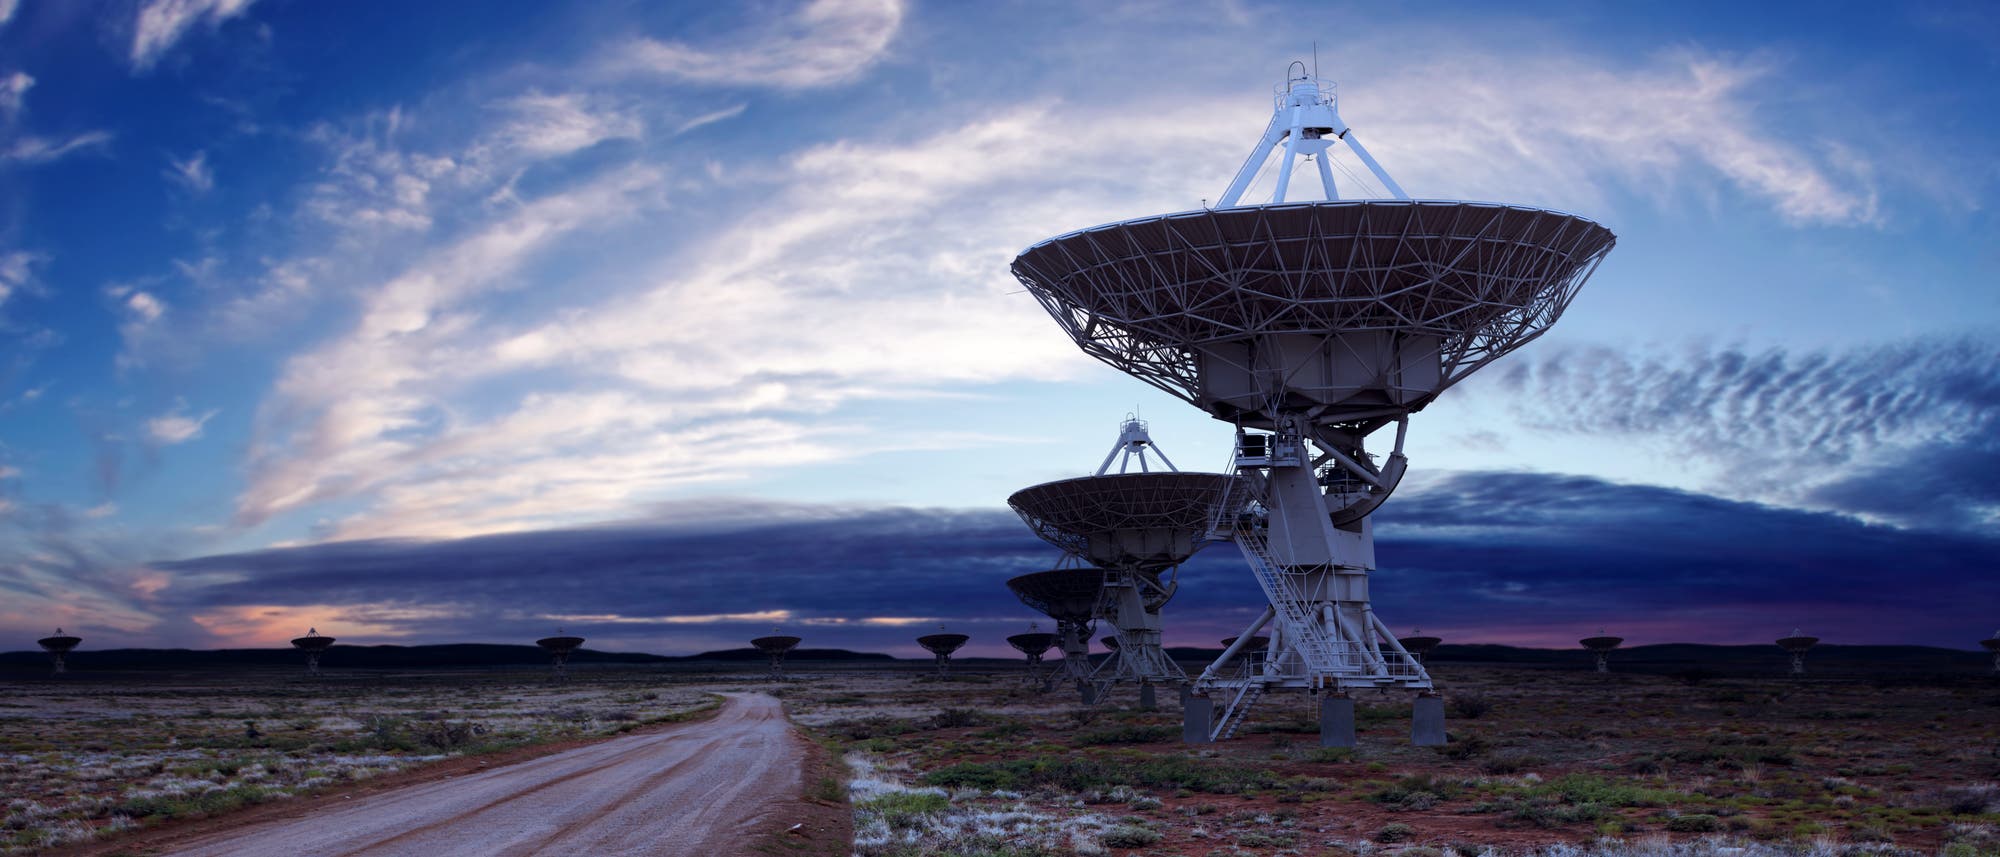 Das Very Large Array ist eine aus 27 Radioteleskopen bestehende Anlage im US-Bundesstaat New Mexico